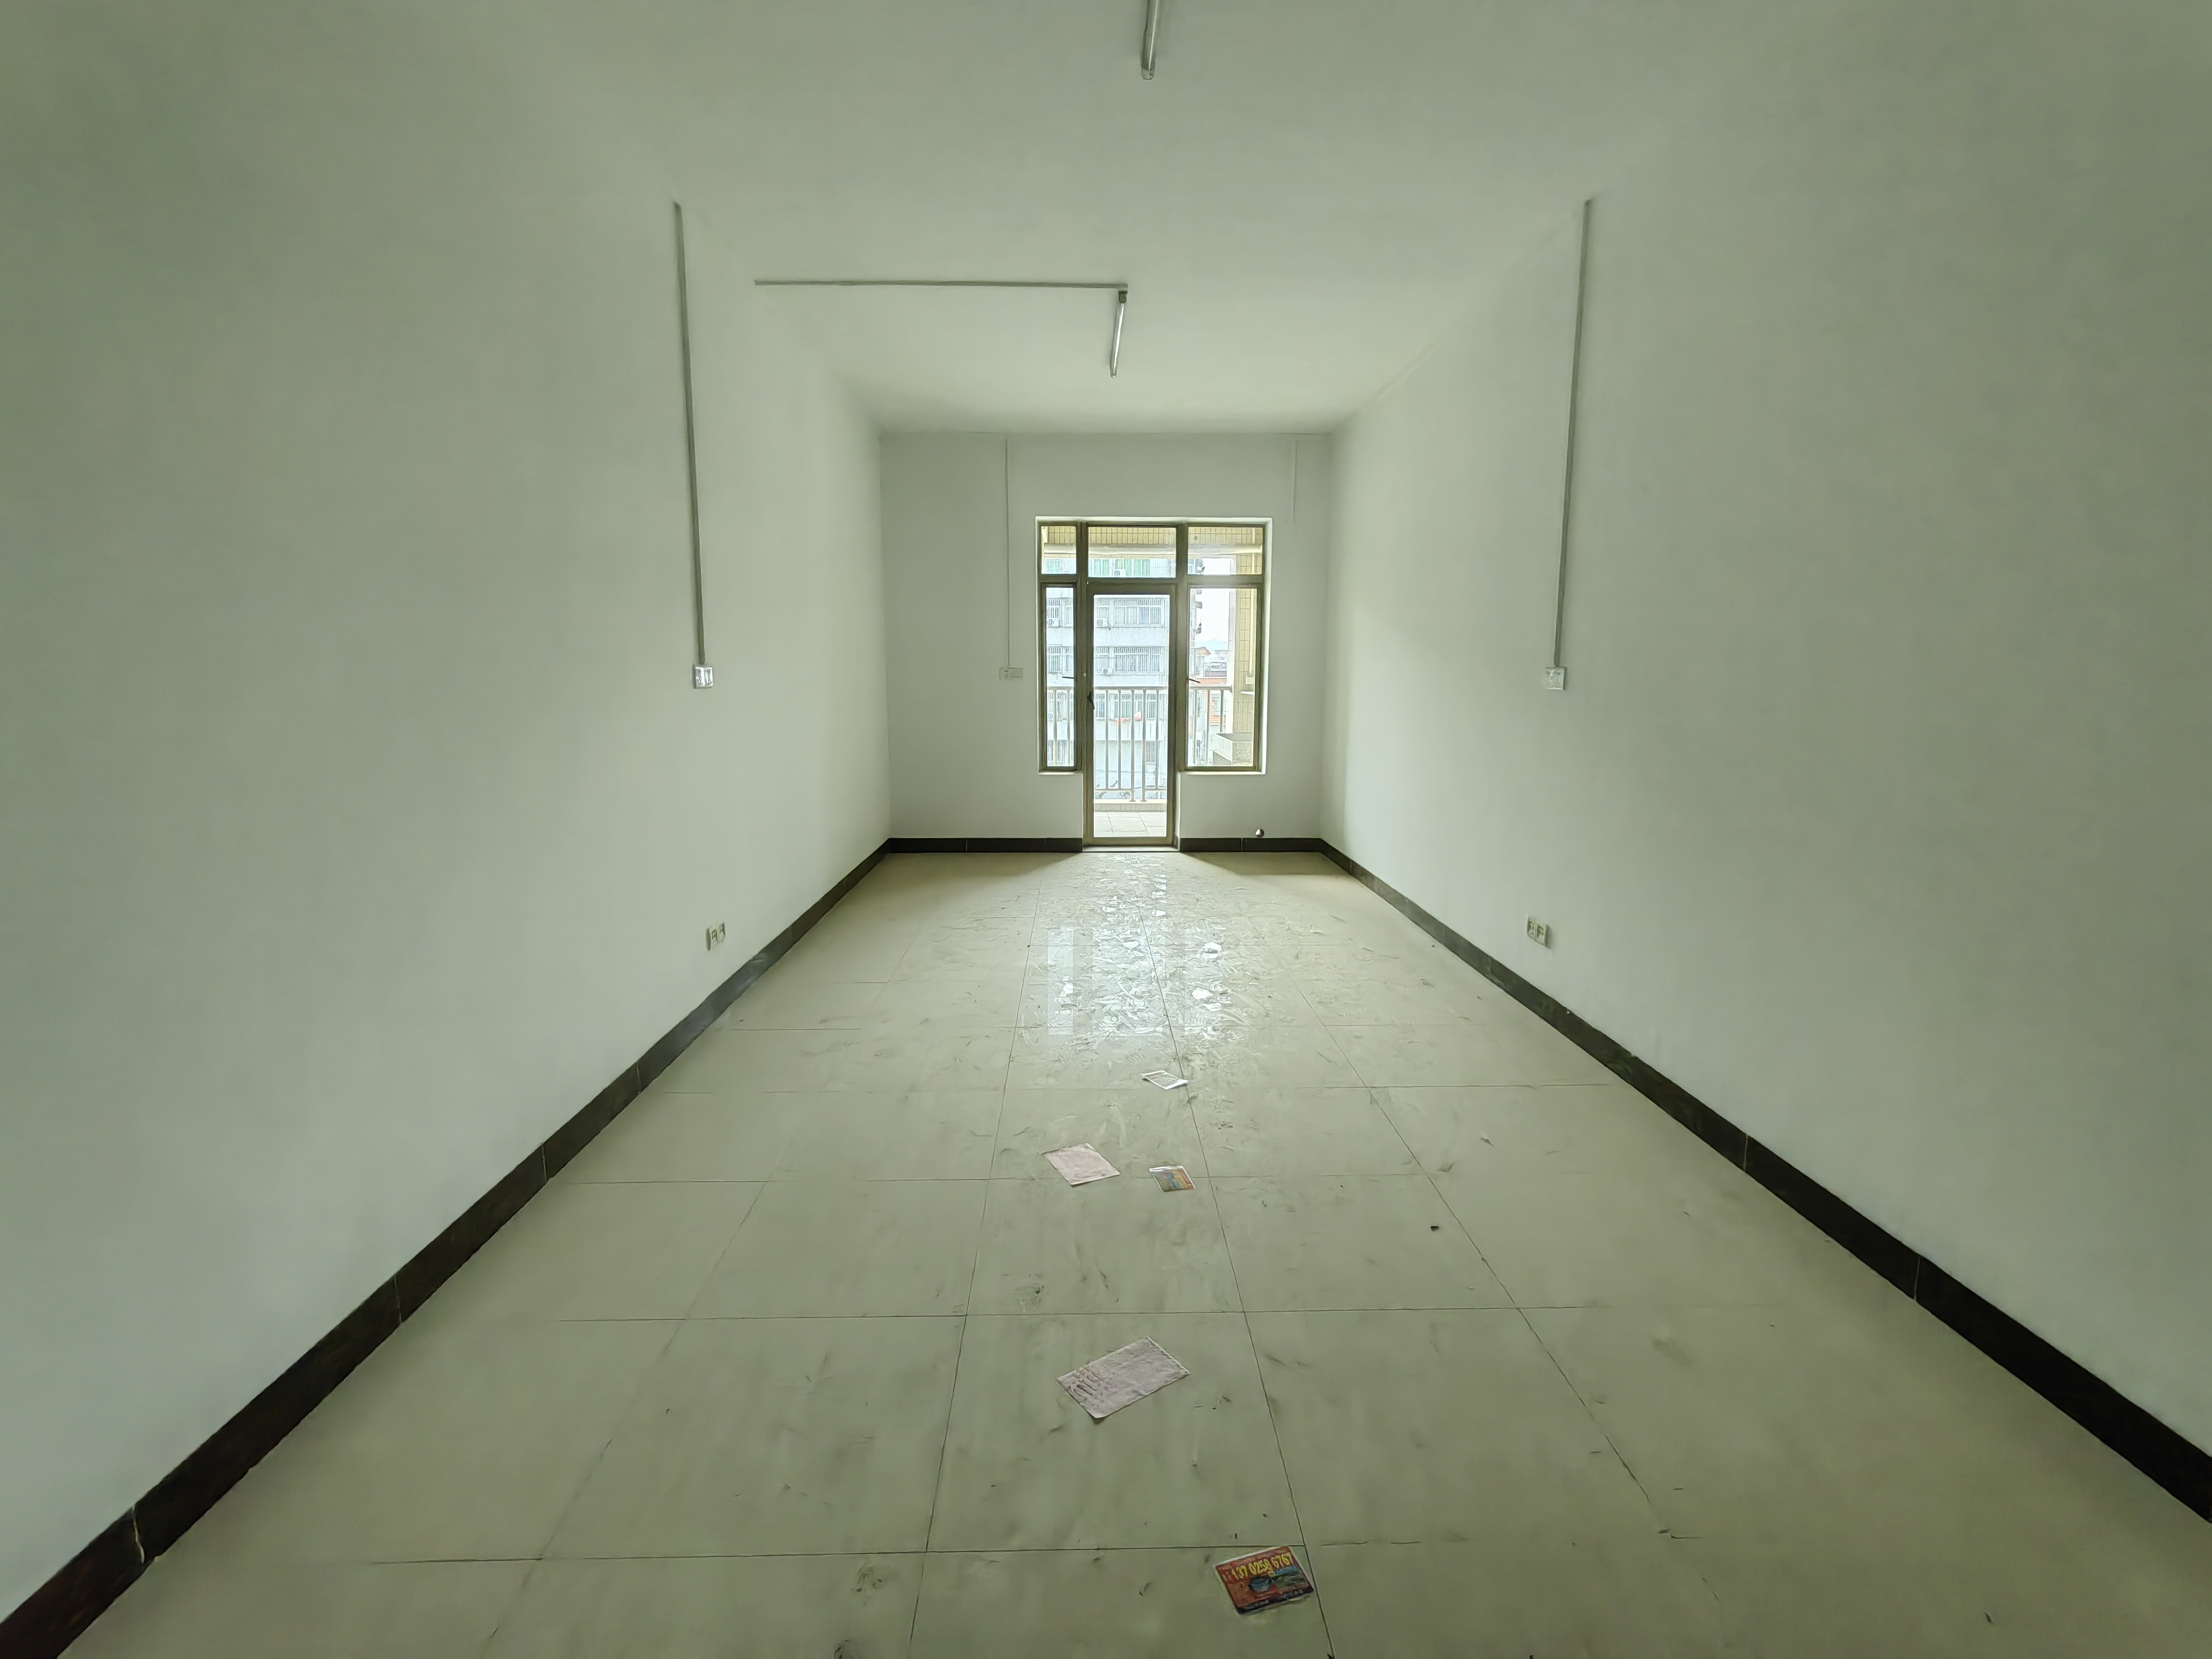 海逸公寓 北 精装 1室 1厅 46m² -惠州海逸公寓租房